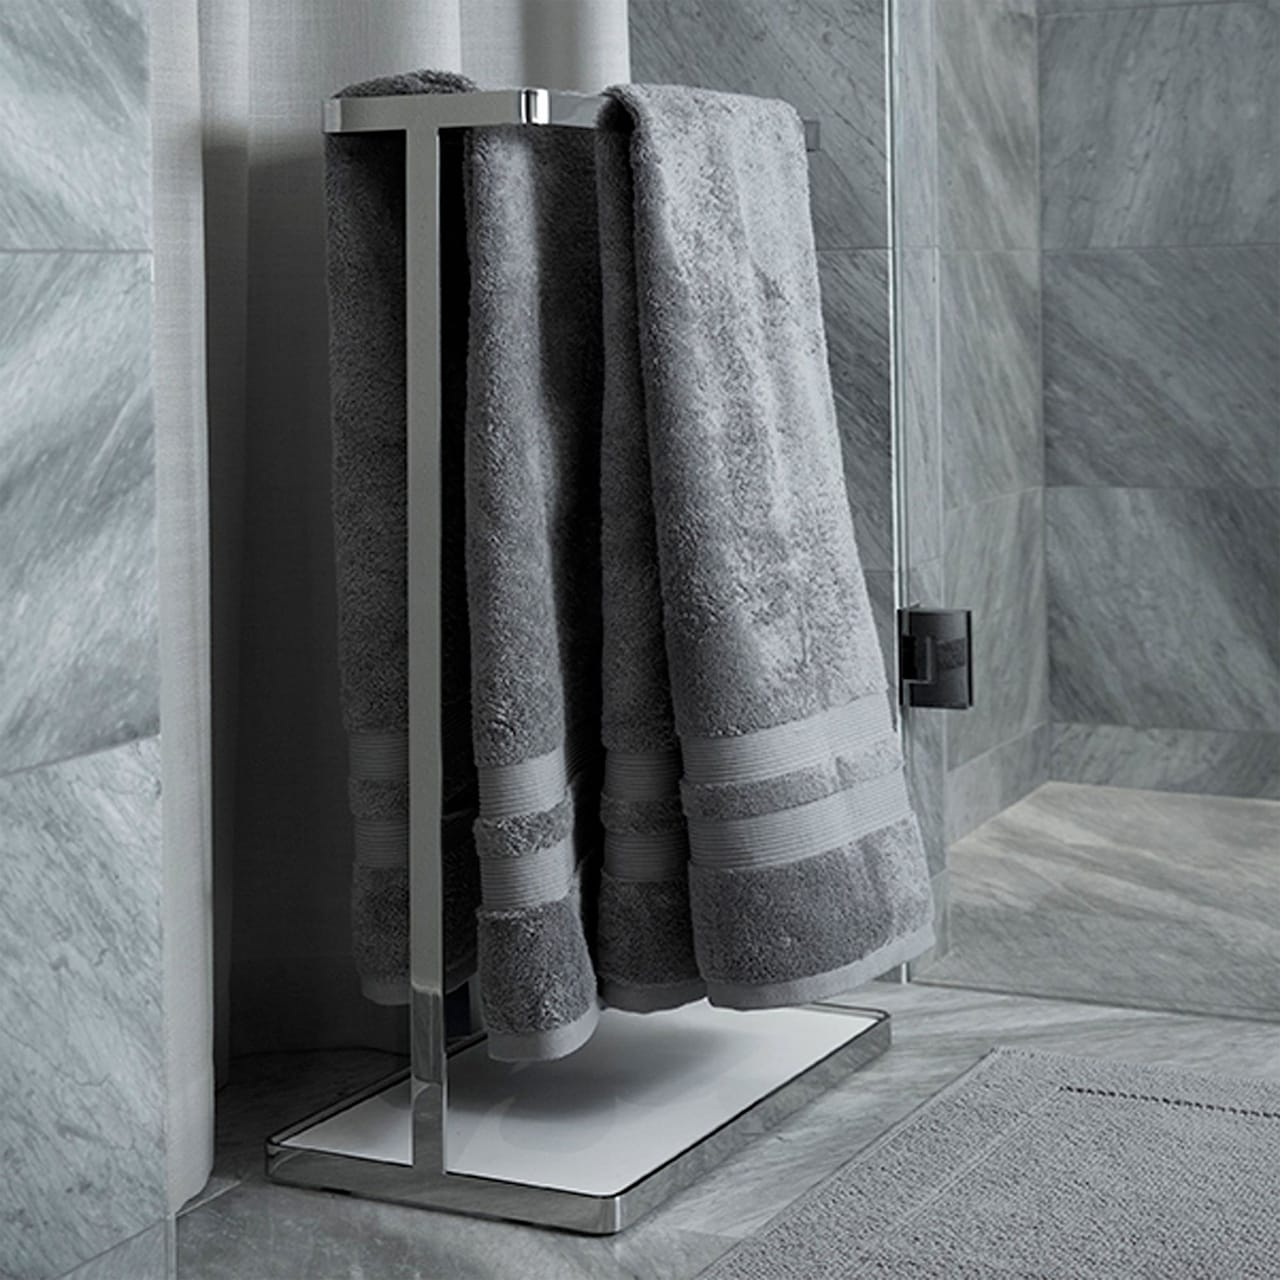 Fontana Towel Organic Grey